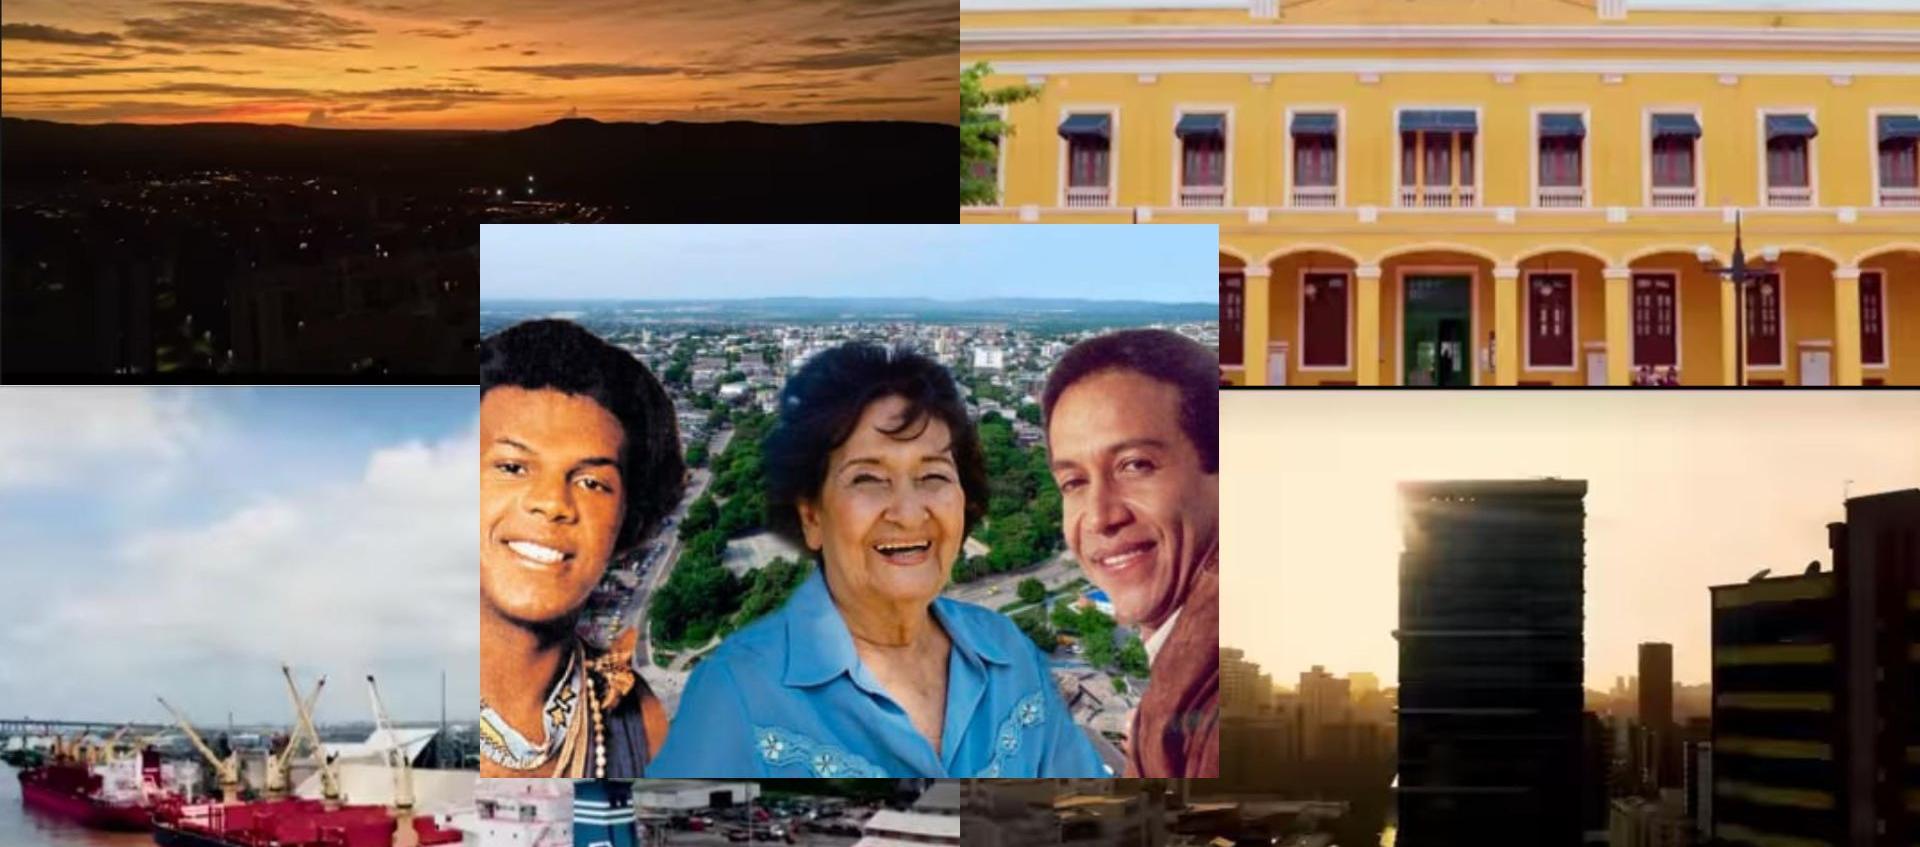 Joe Arroyo, Esthercita Forero, Diomedes Díaz, imágenes de Barranquilla